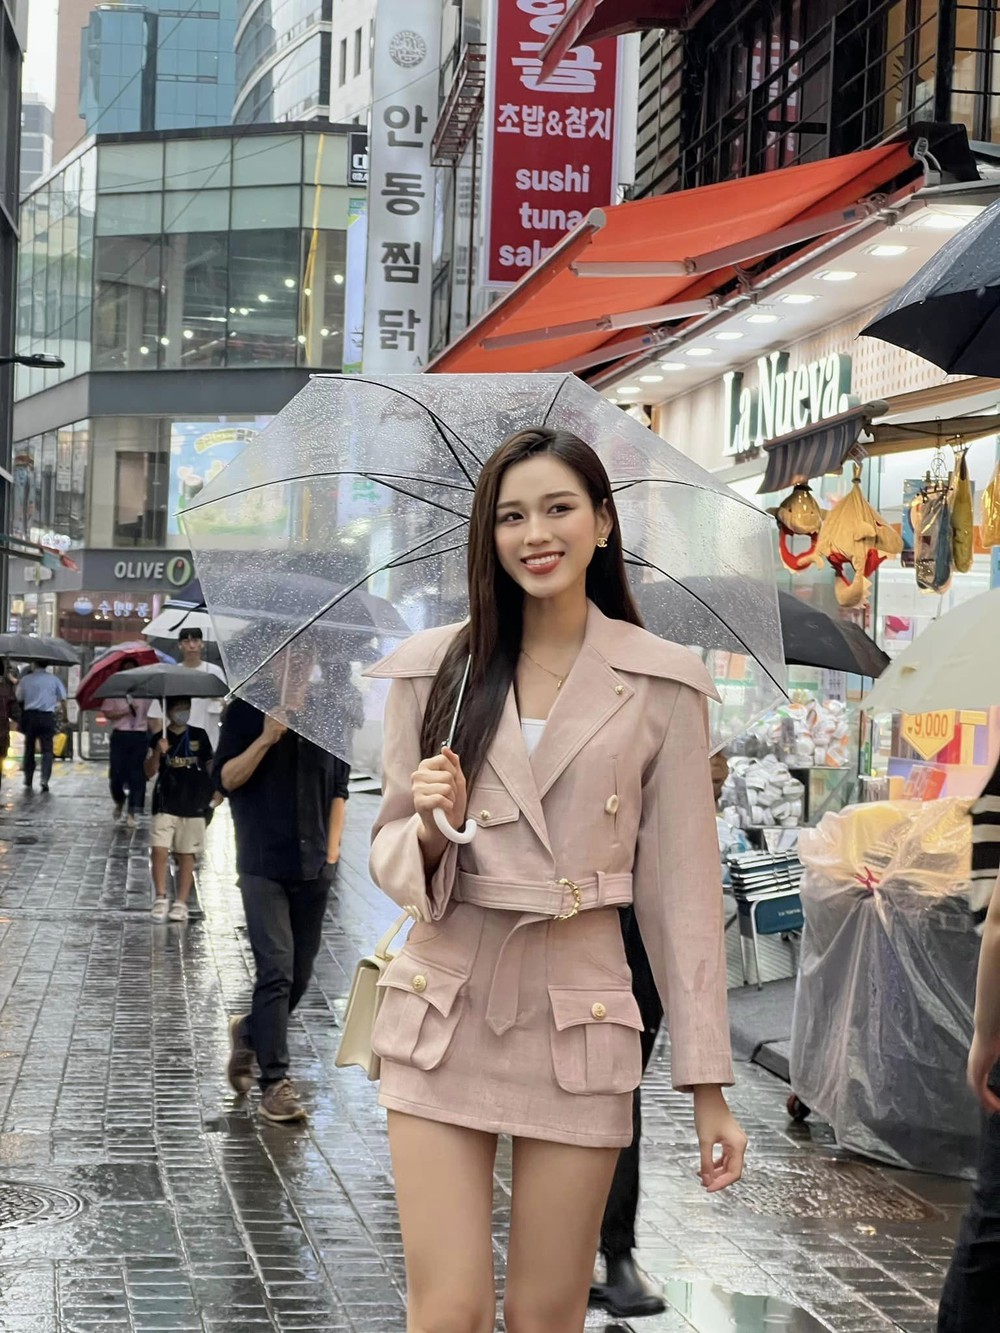 Hoa hậu Đỗ Thị Hà chuộng váy siêu ngắn, khoe chân dài 1m11 - Ảnh 2.